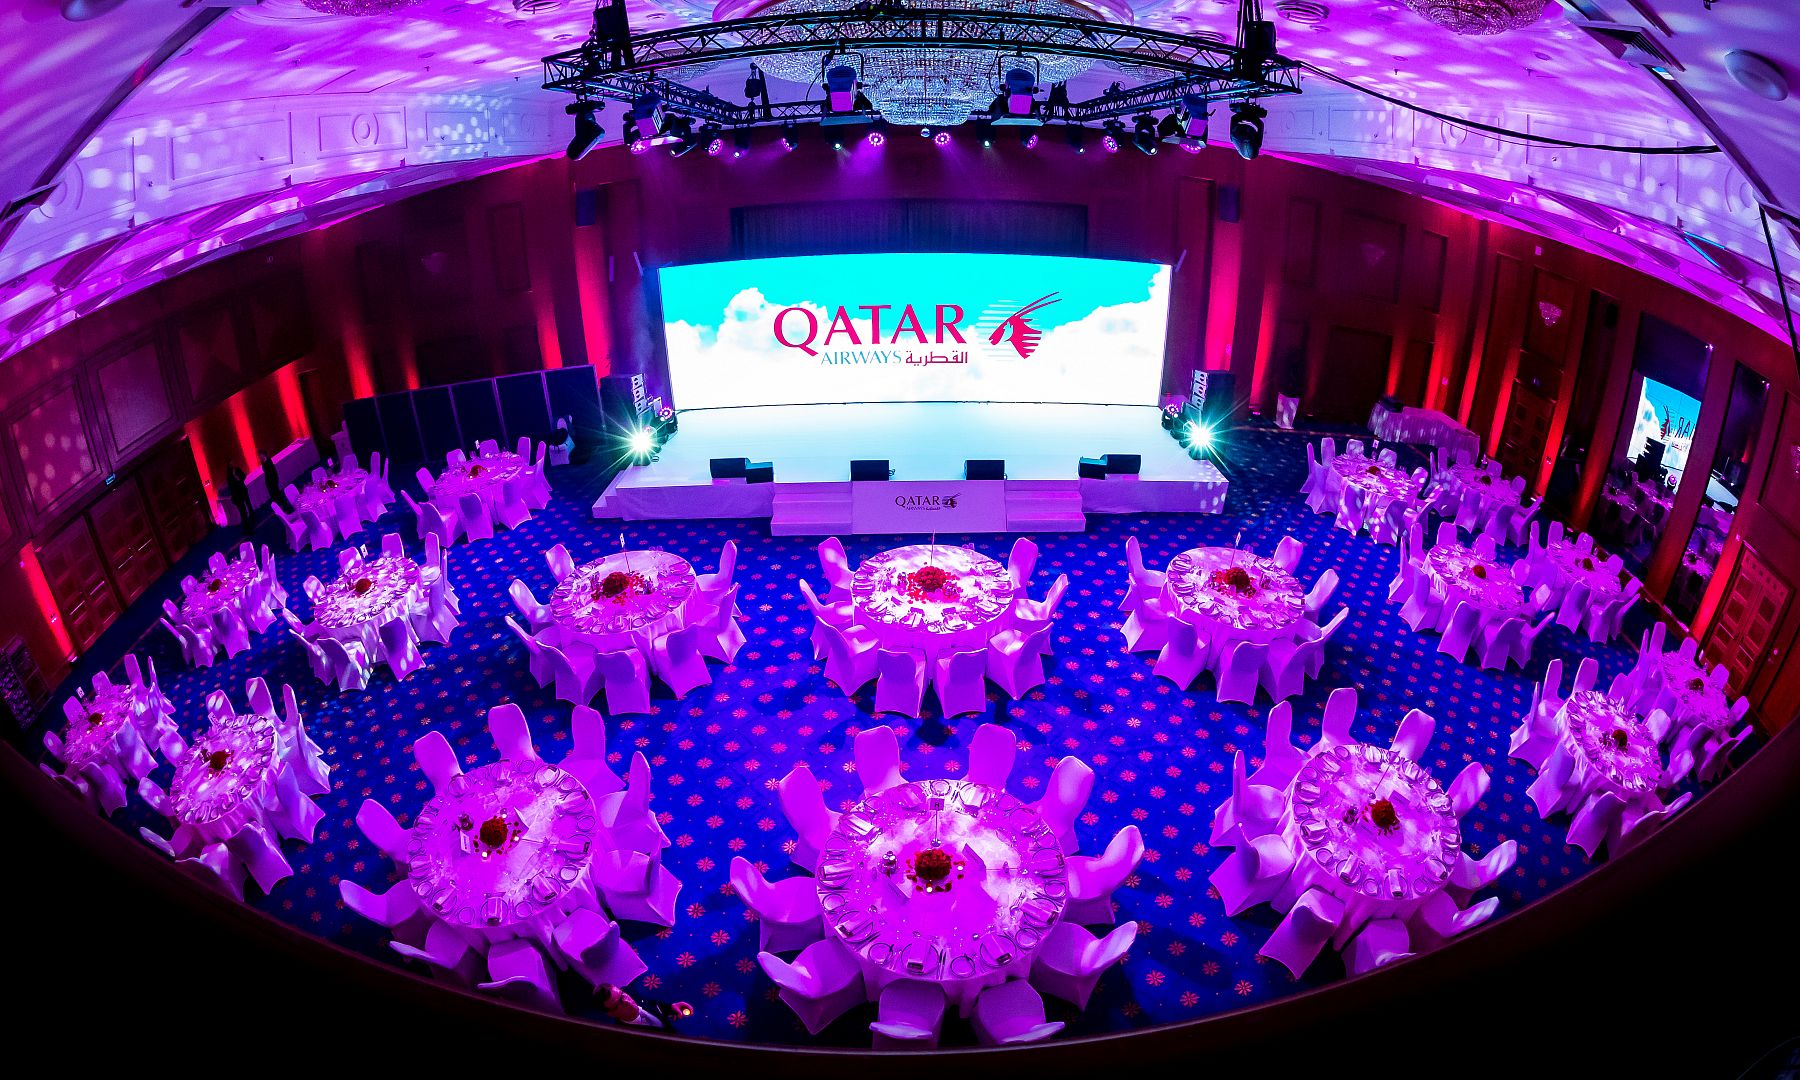 Qatar airwaves 2017